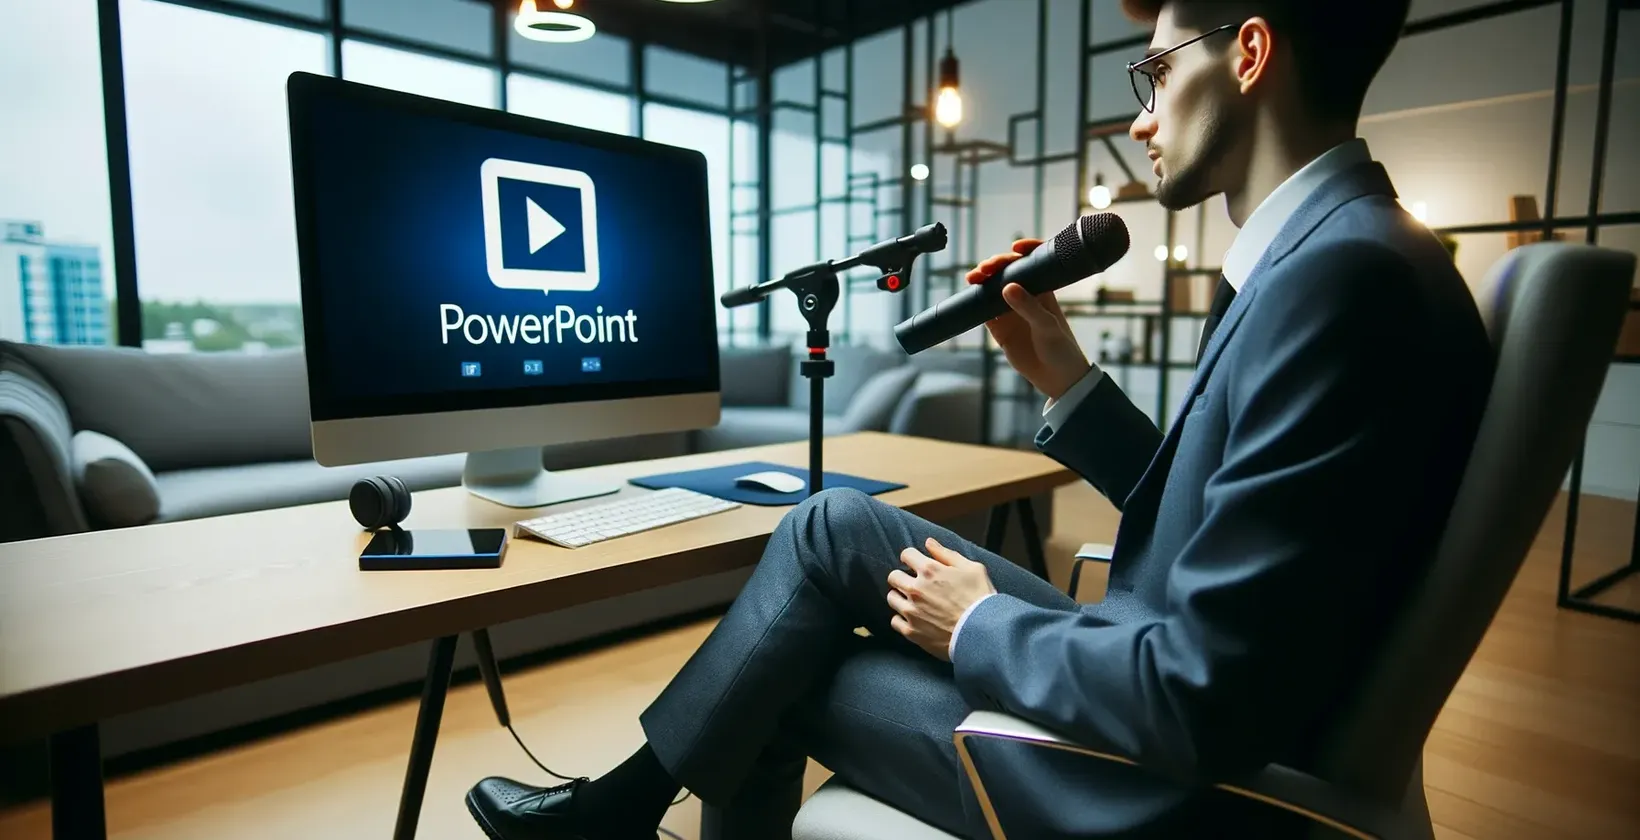 Ein Mann in einem Büro mit Mikrofon schaut auf einen Monitor, auf dem das Logo PowerPoint erscheint.